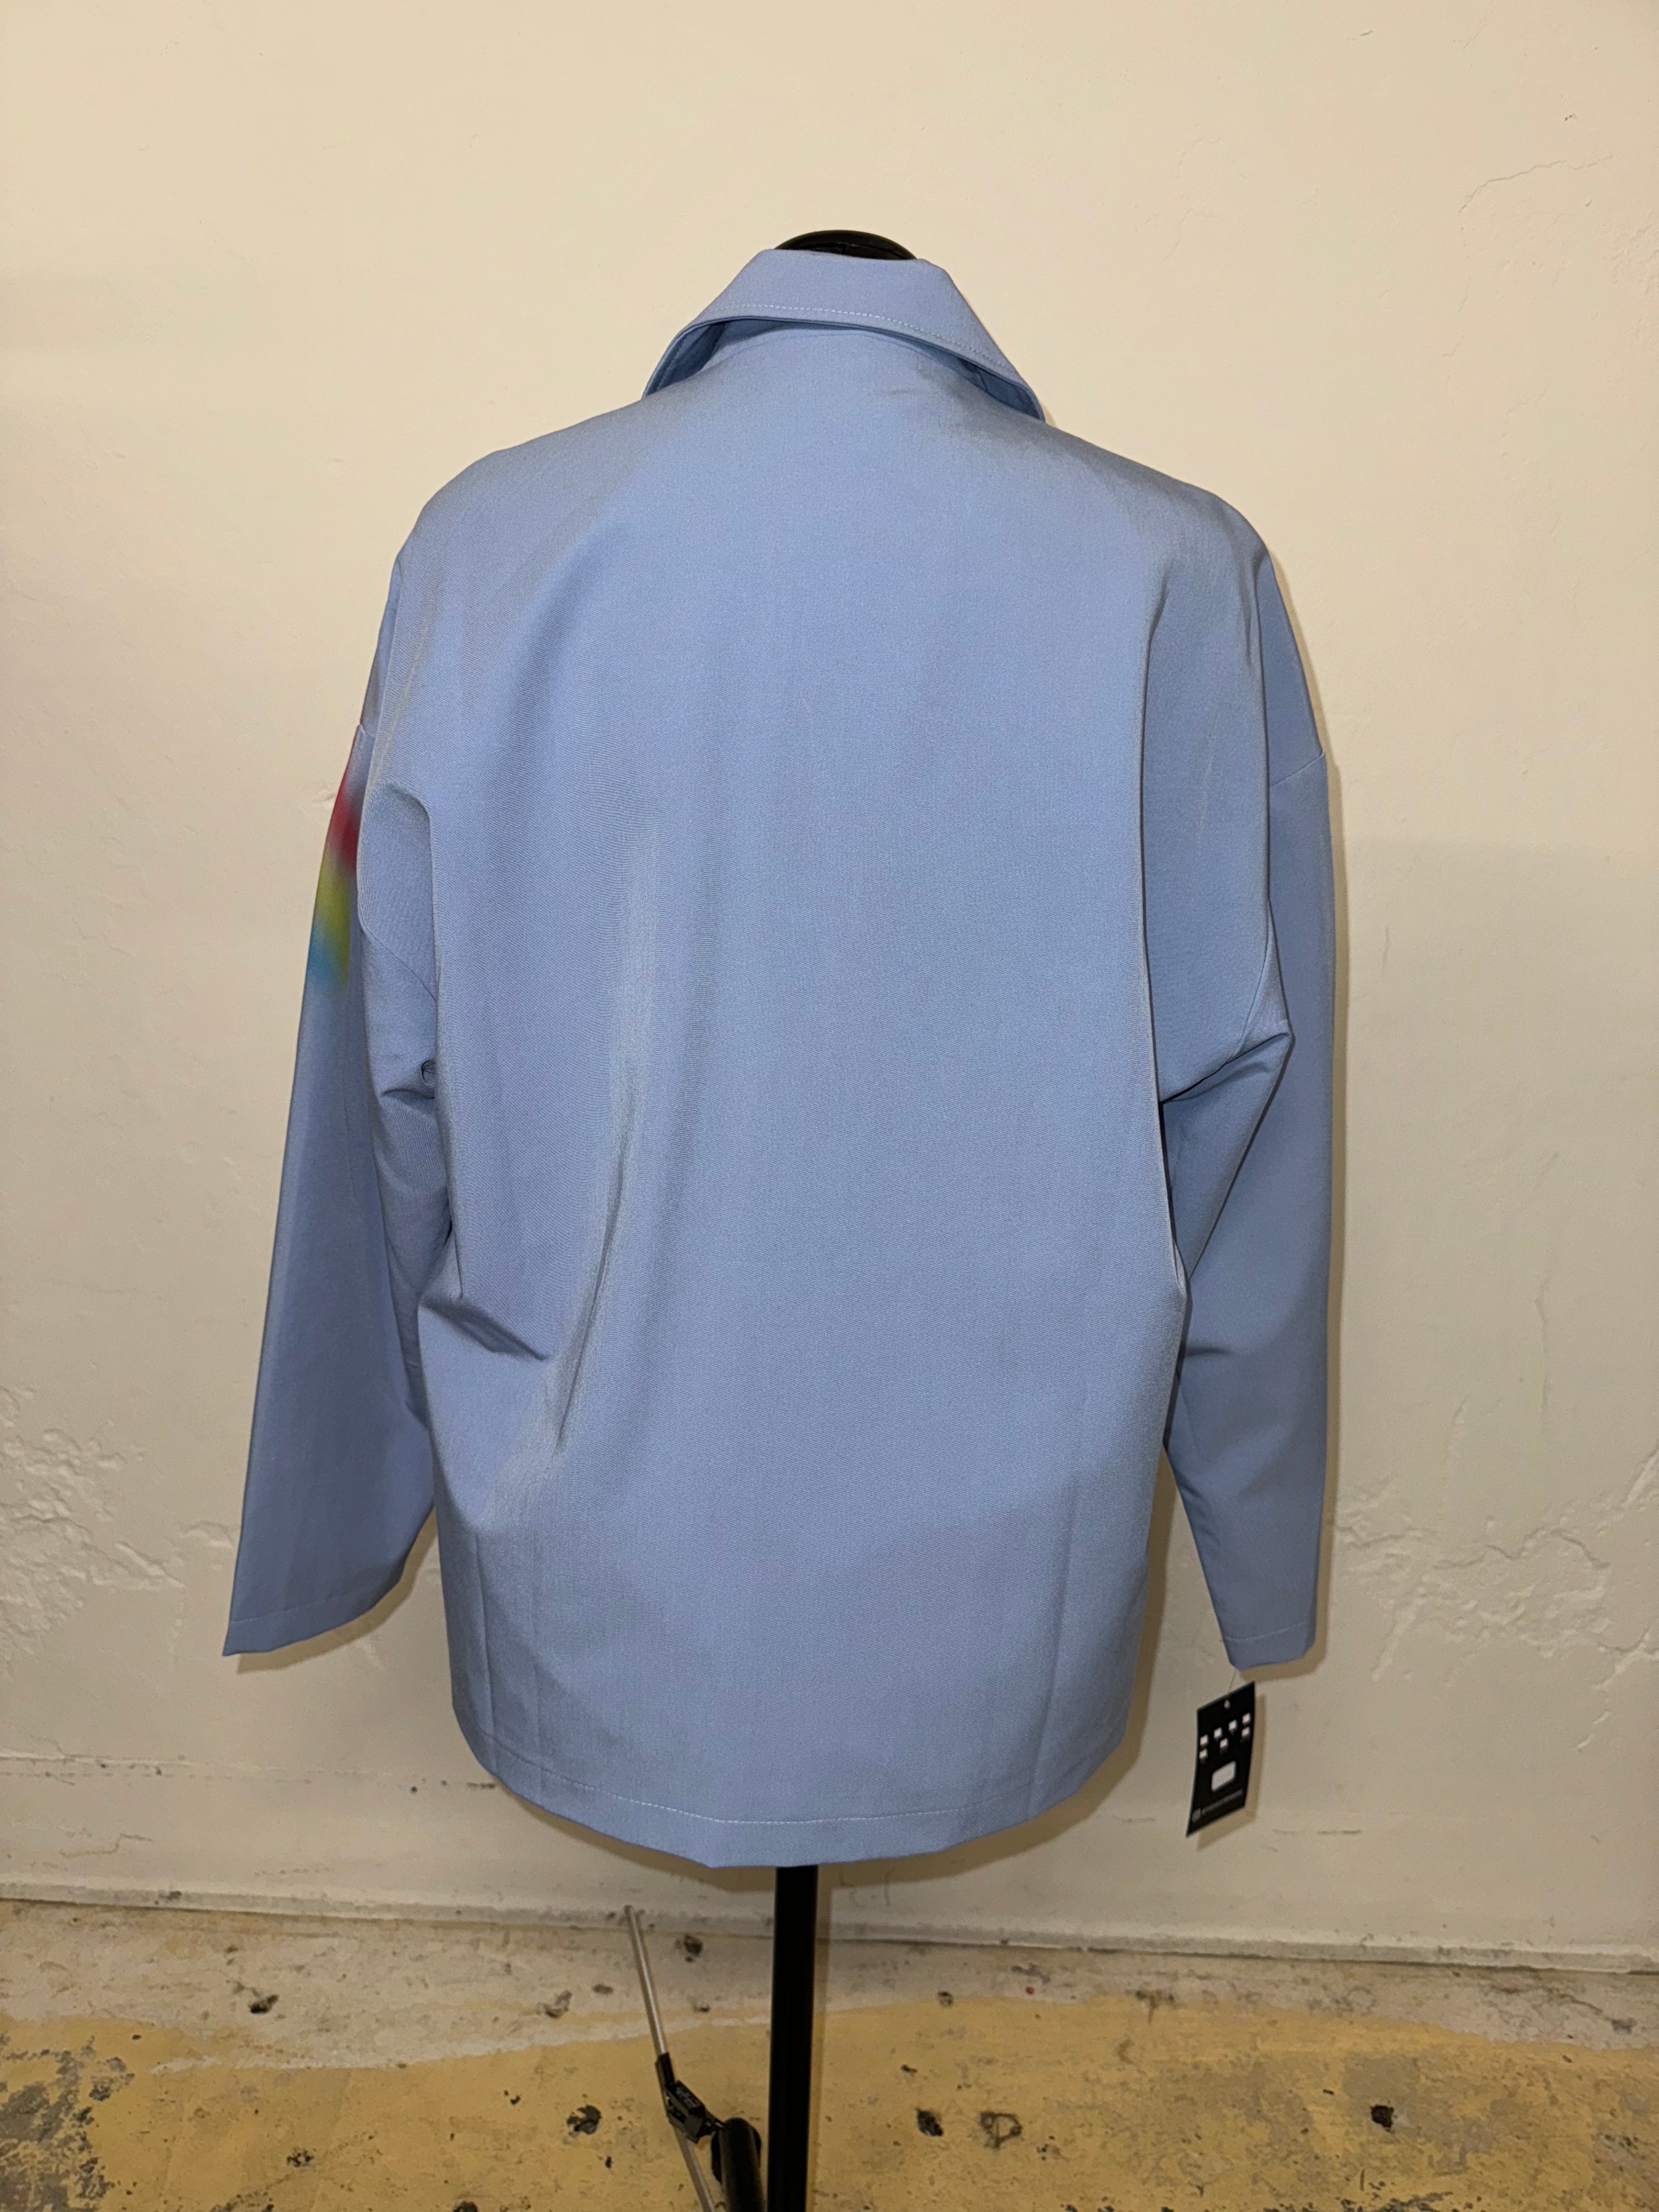 Blue Rainbow Blazer | FINAL SALE